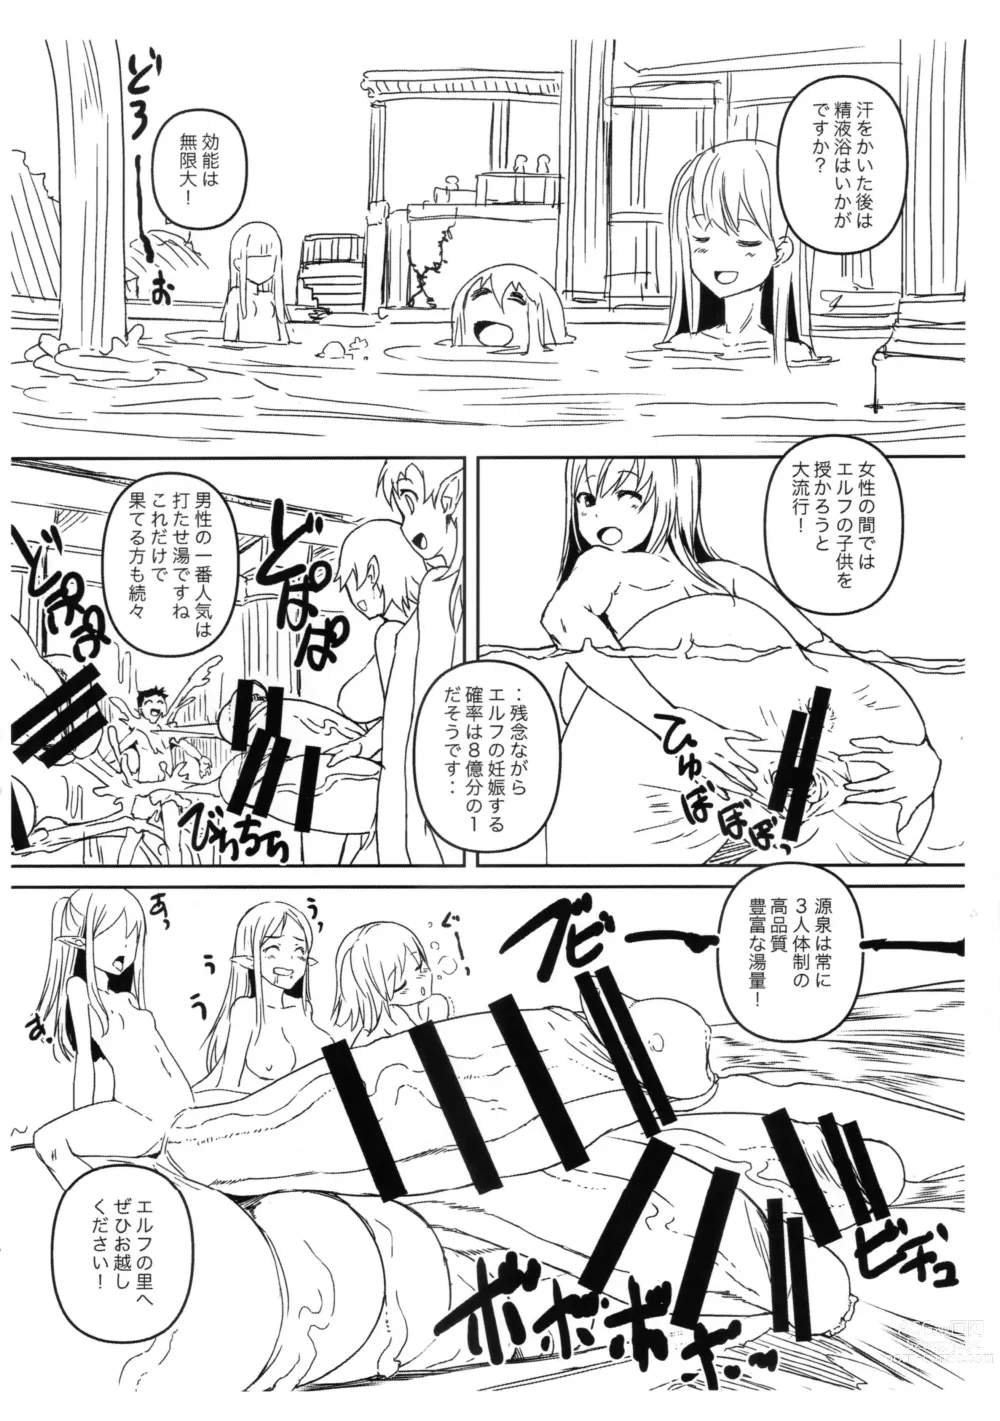 Page 5 of doujinshi Futanari Elf no Sato e Youkoso